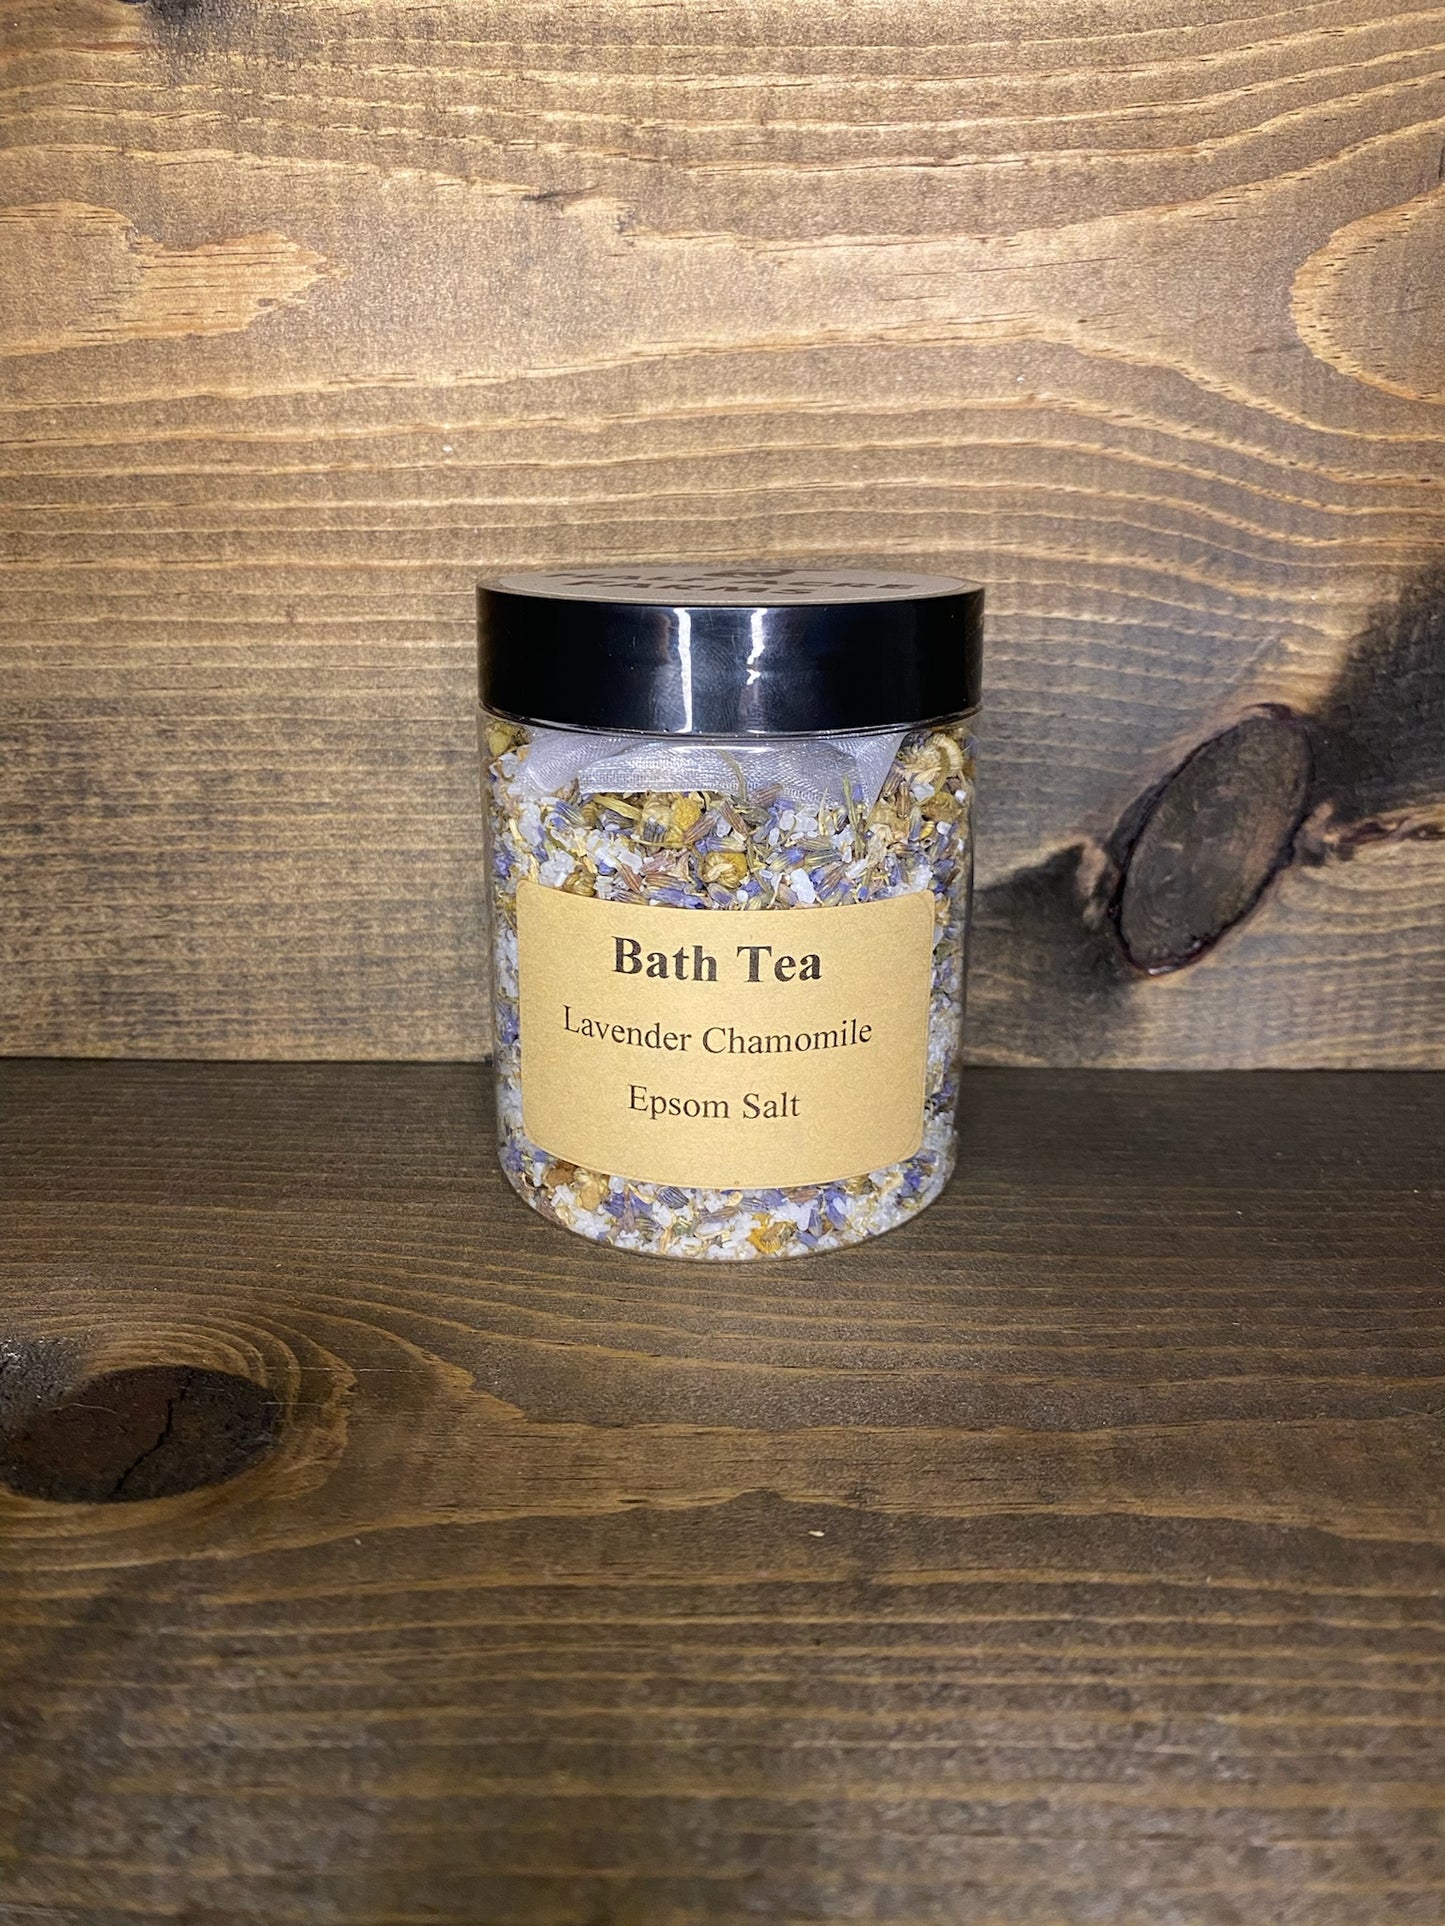 Lavender Chamomile Epsom Salt Bath Tea